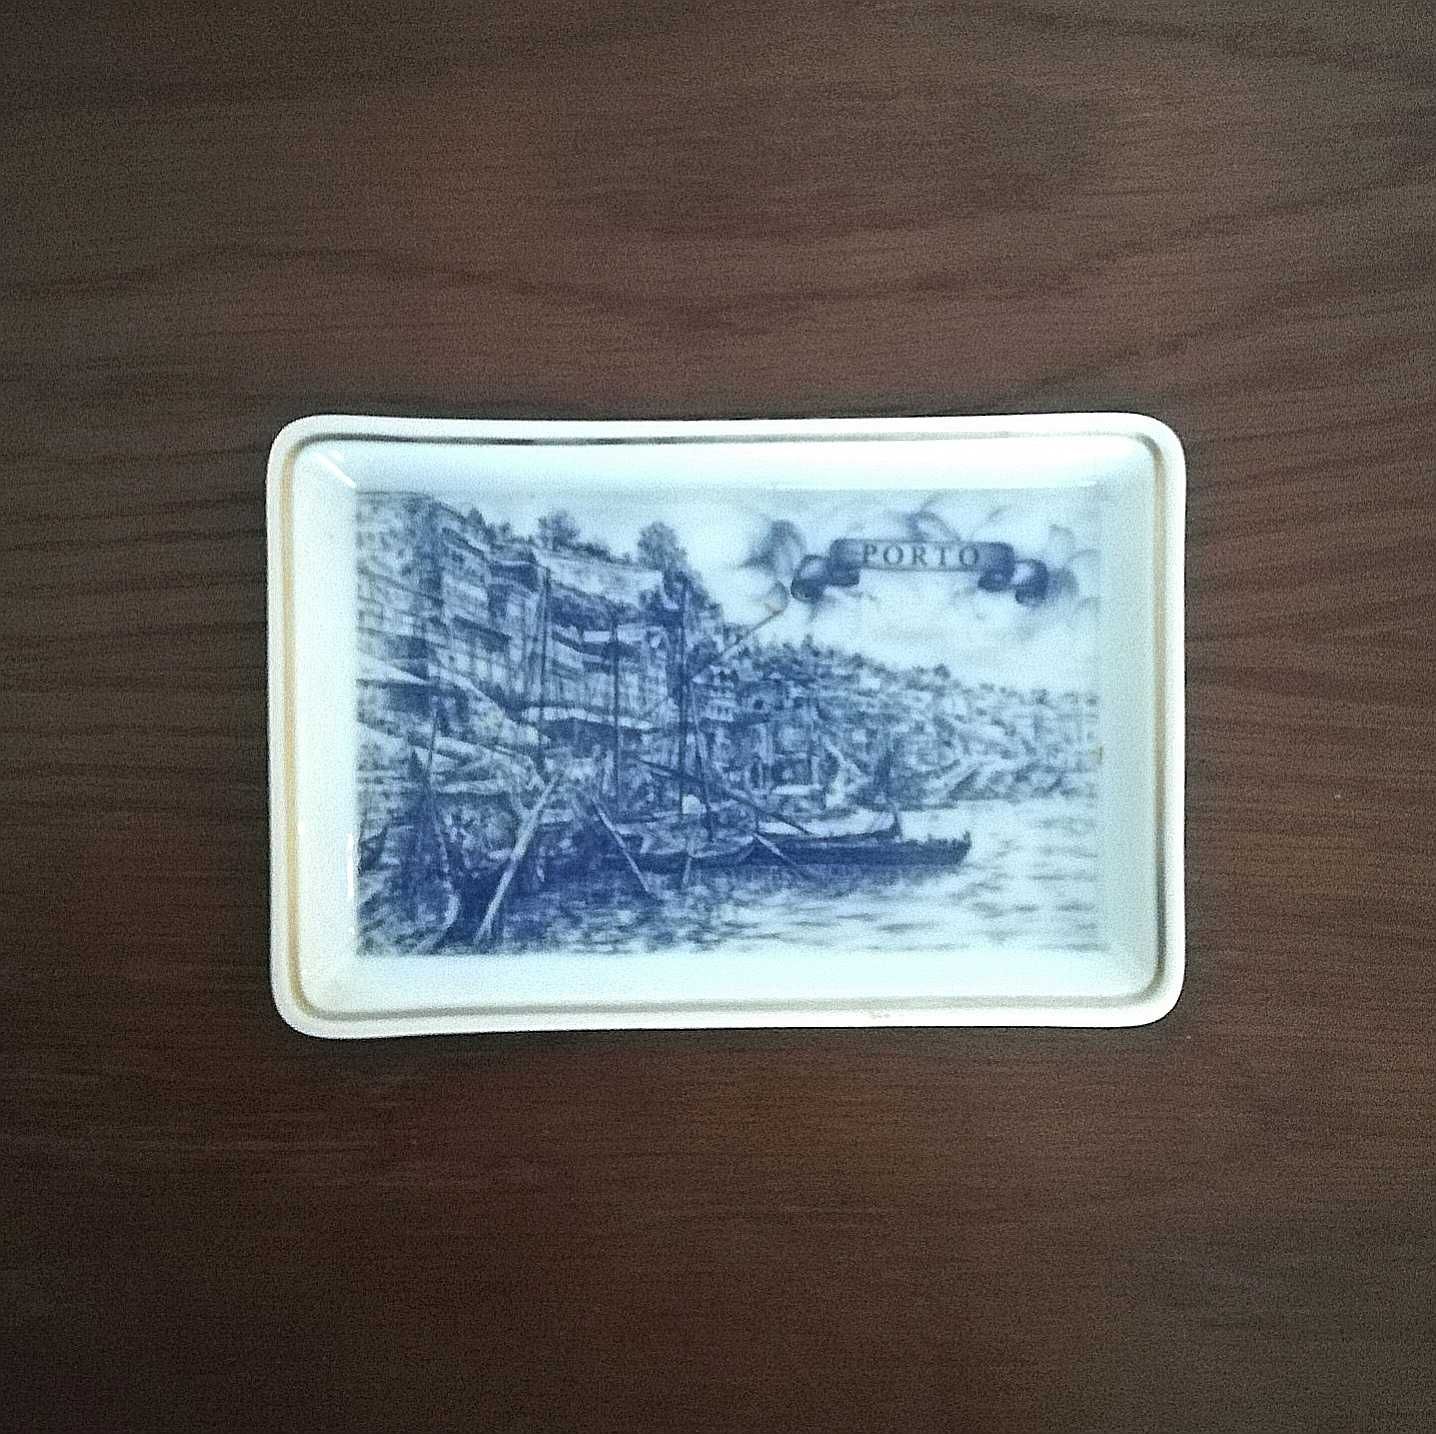 Prato/Cinzeiro em porcelana da coleção Azulejos Porto, Vista Alegre